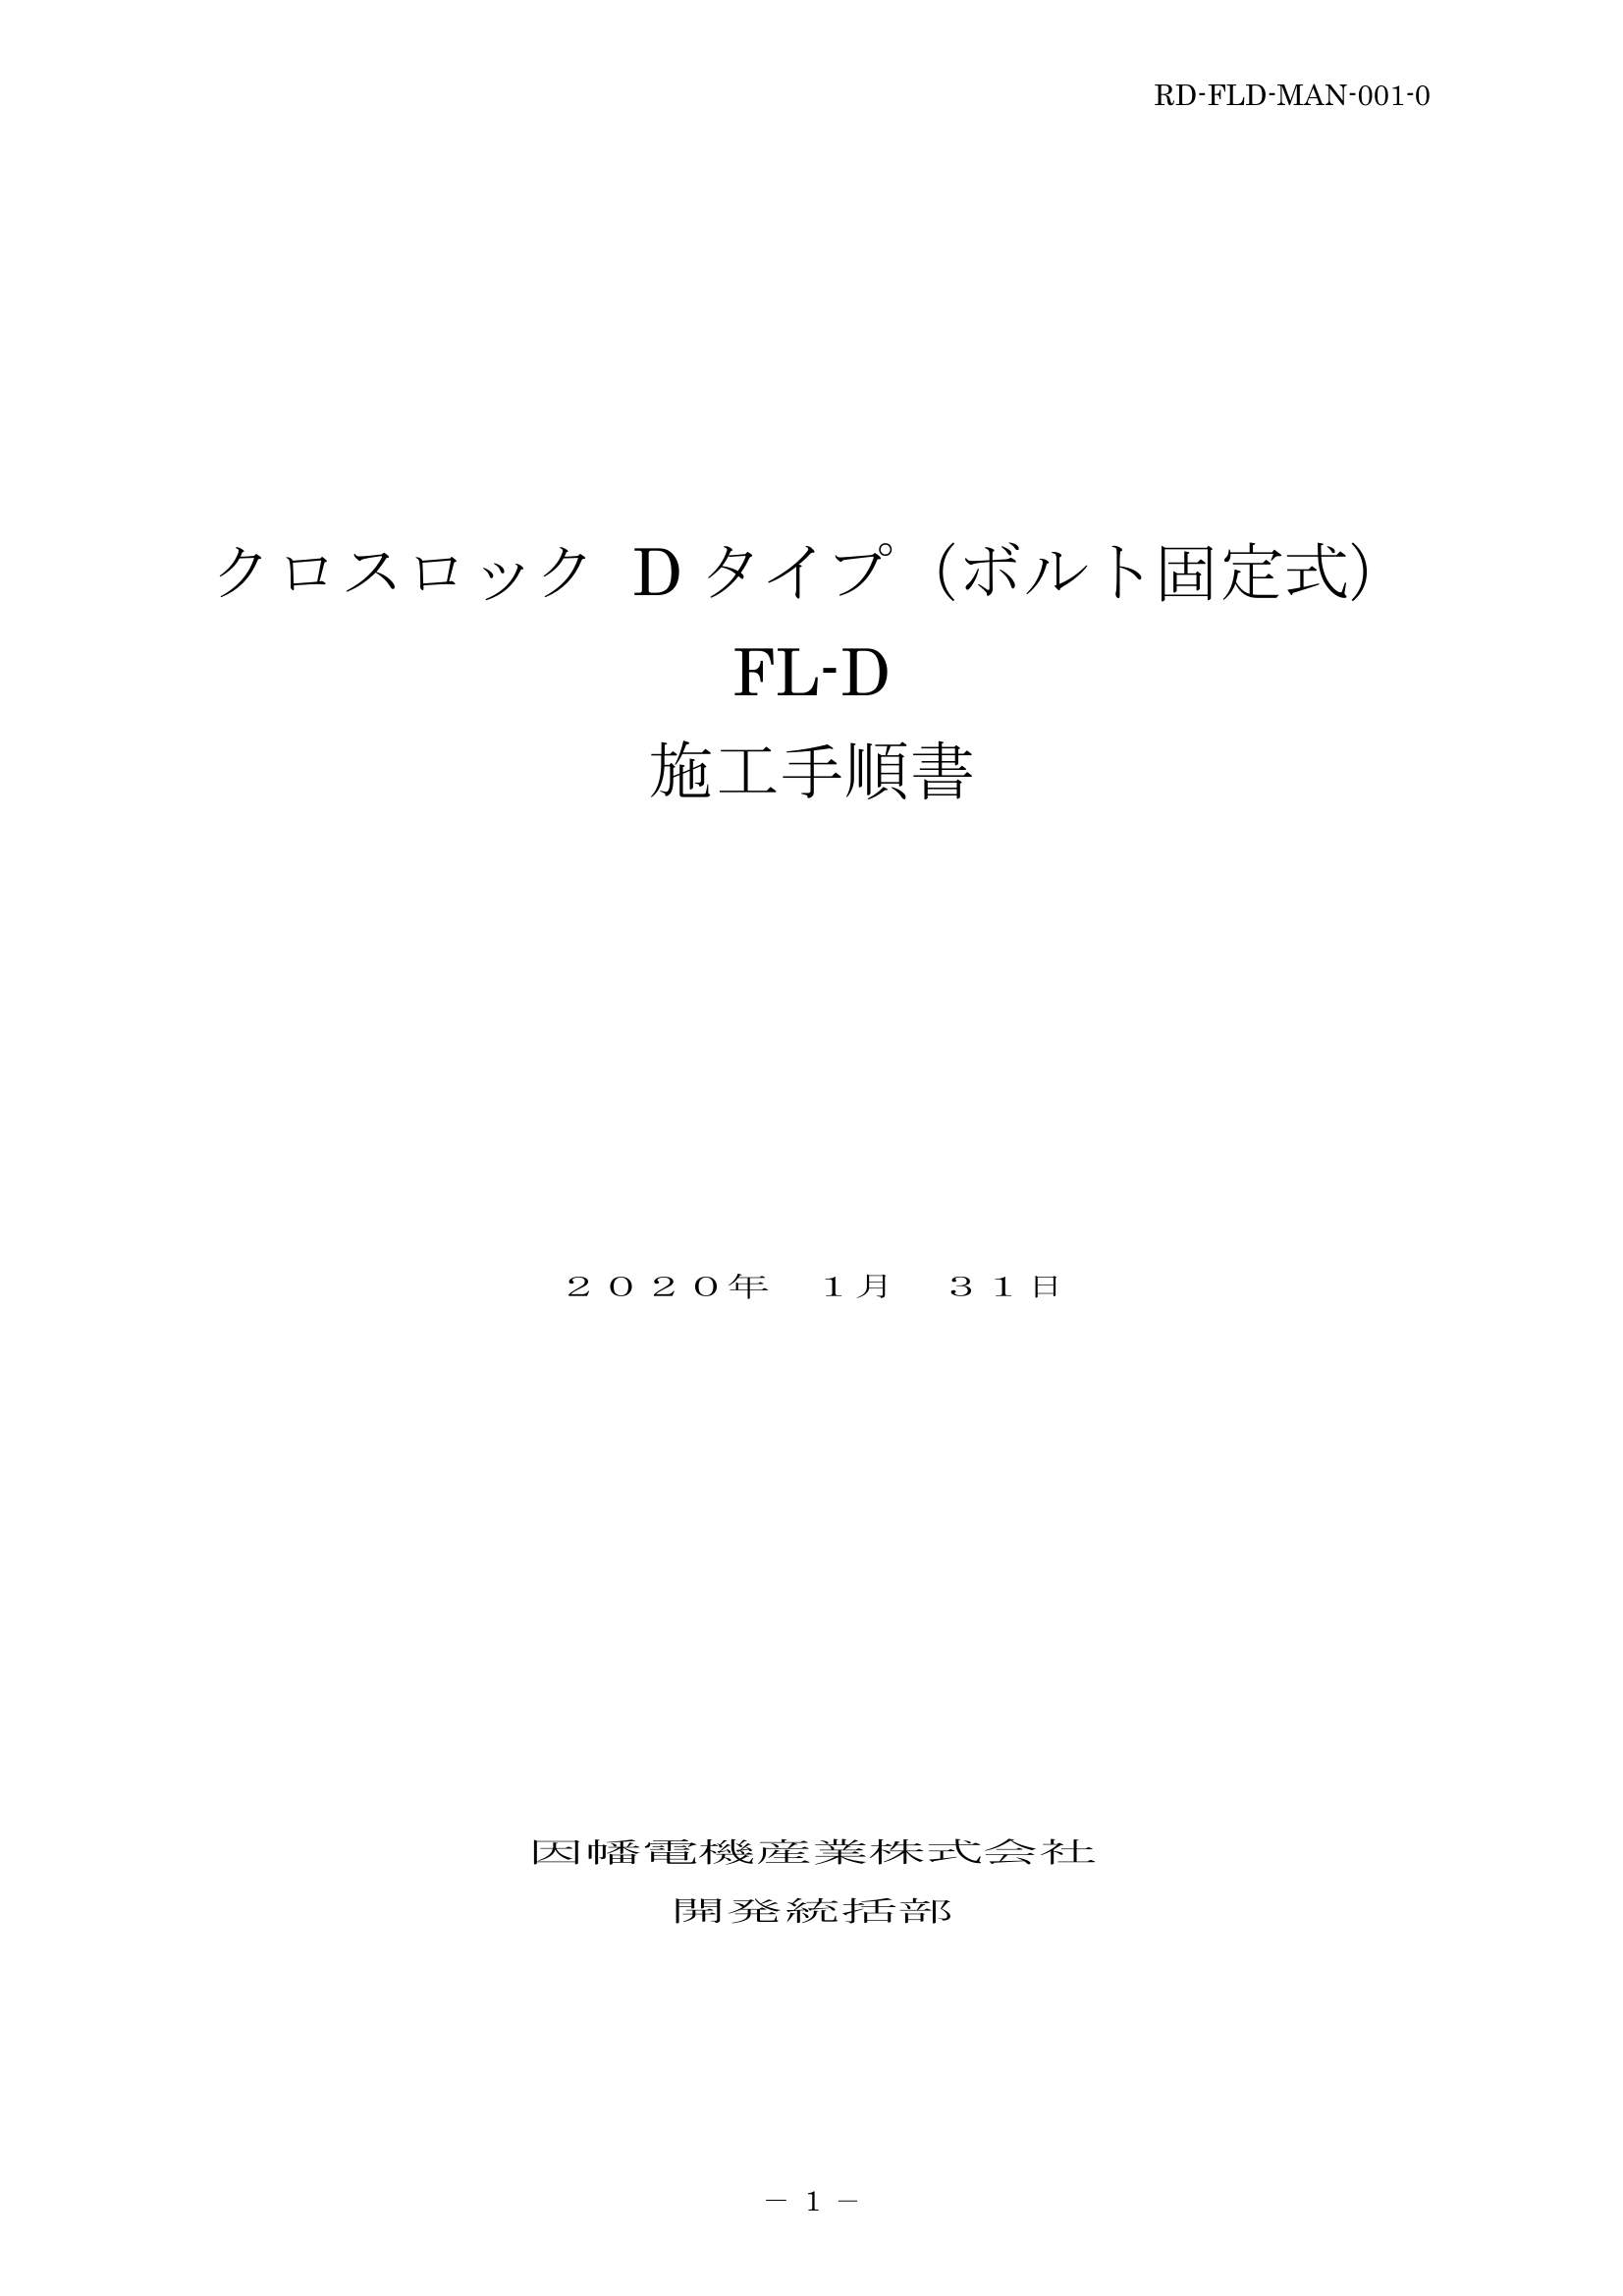 FL-D_施工要領手順書_20200131.pdf